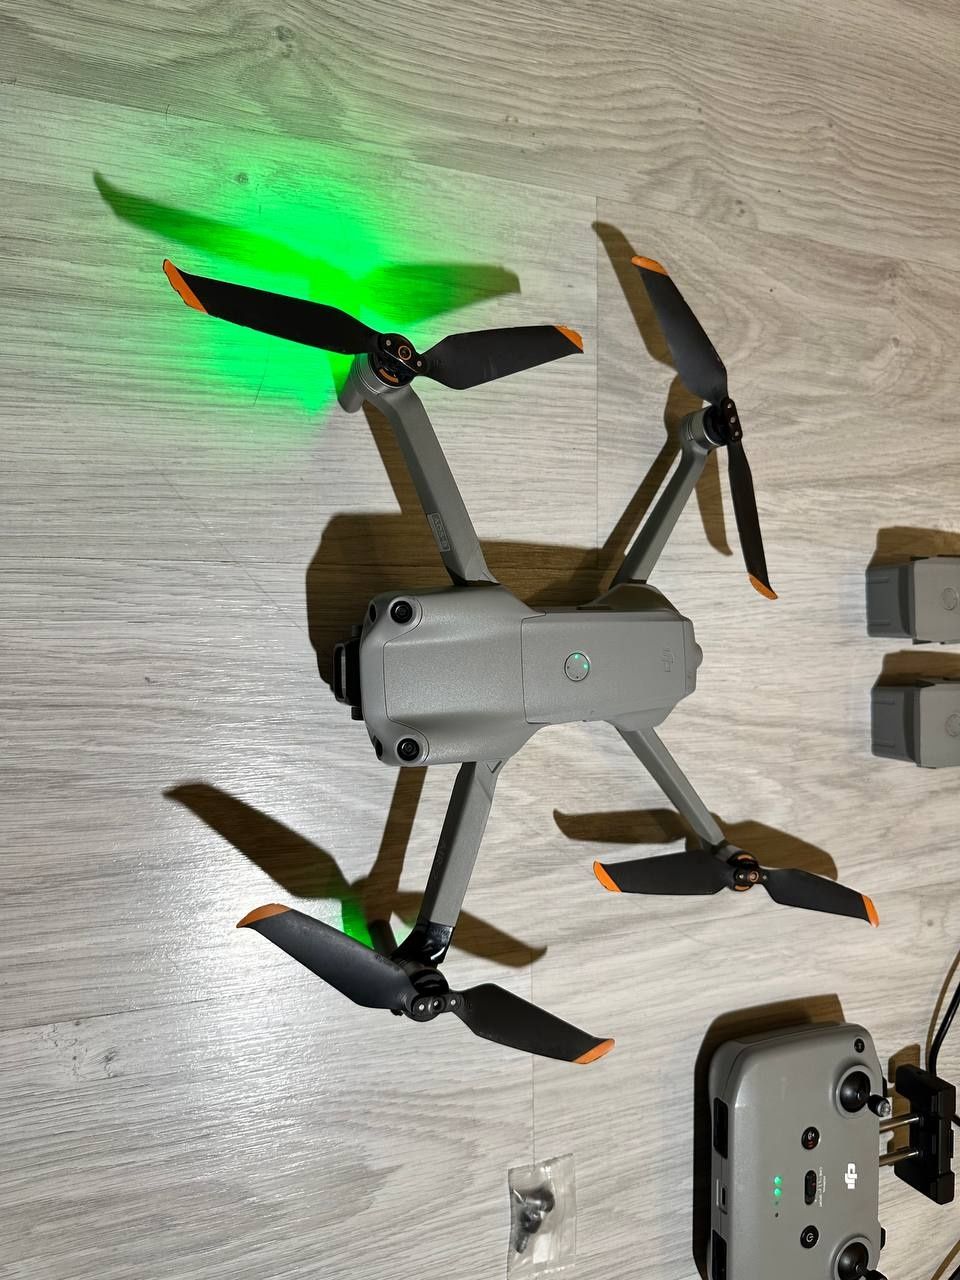 Дрон DJI Air 2S Fly More Combo cepый [drone, кводрокоптер]
квадрокопте